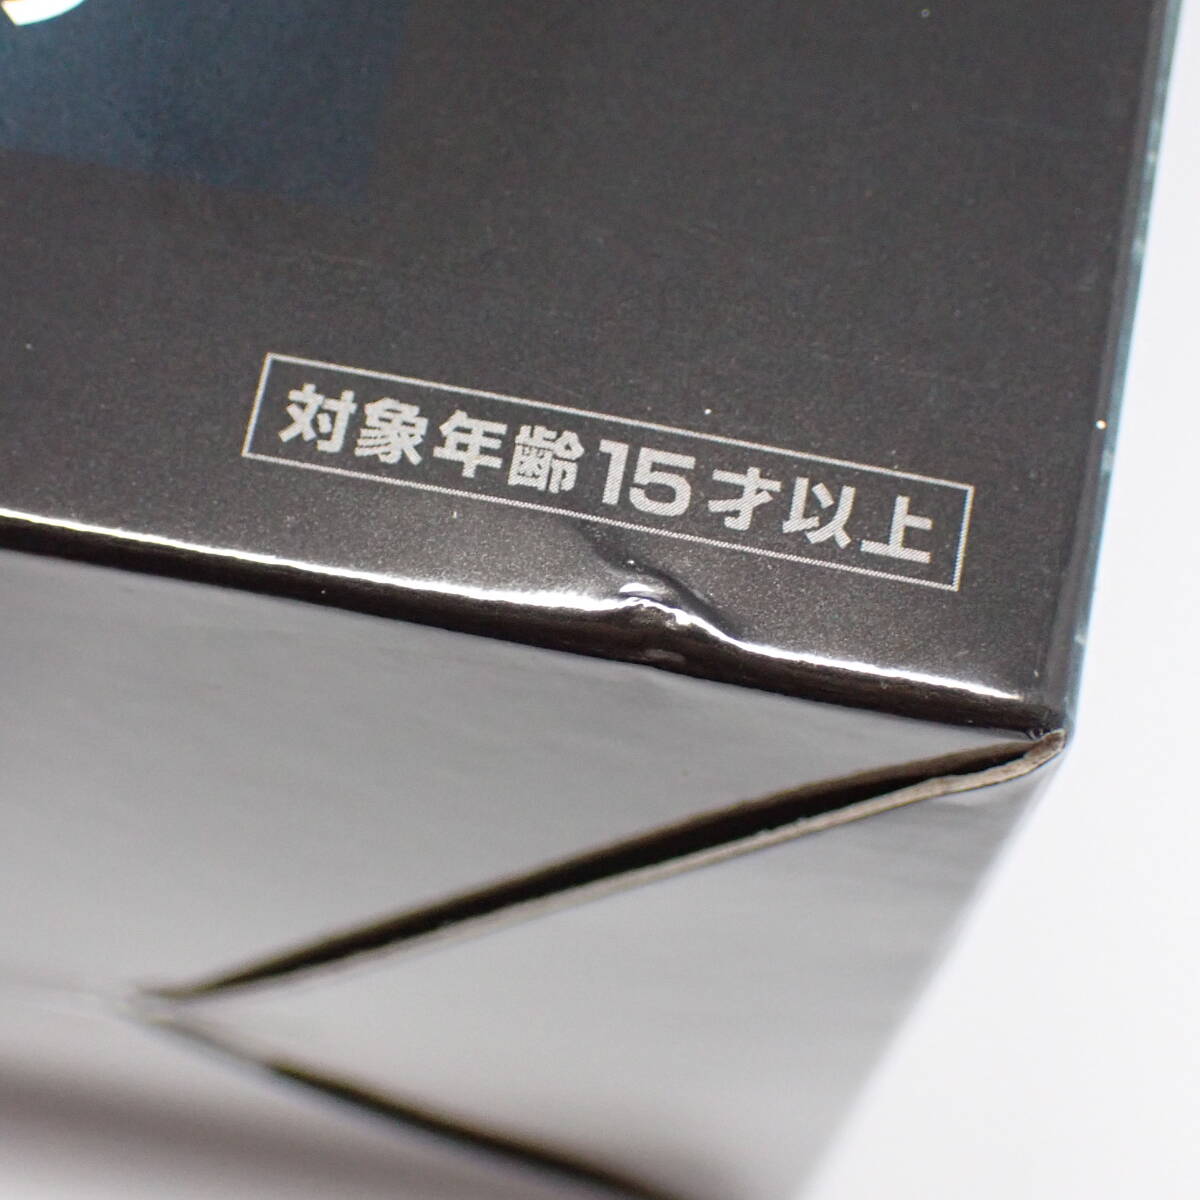  нераспечатанный товар sk одежда * enix A.k громкий Final Fantasy VII переделка продажа память жребий 